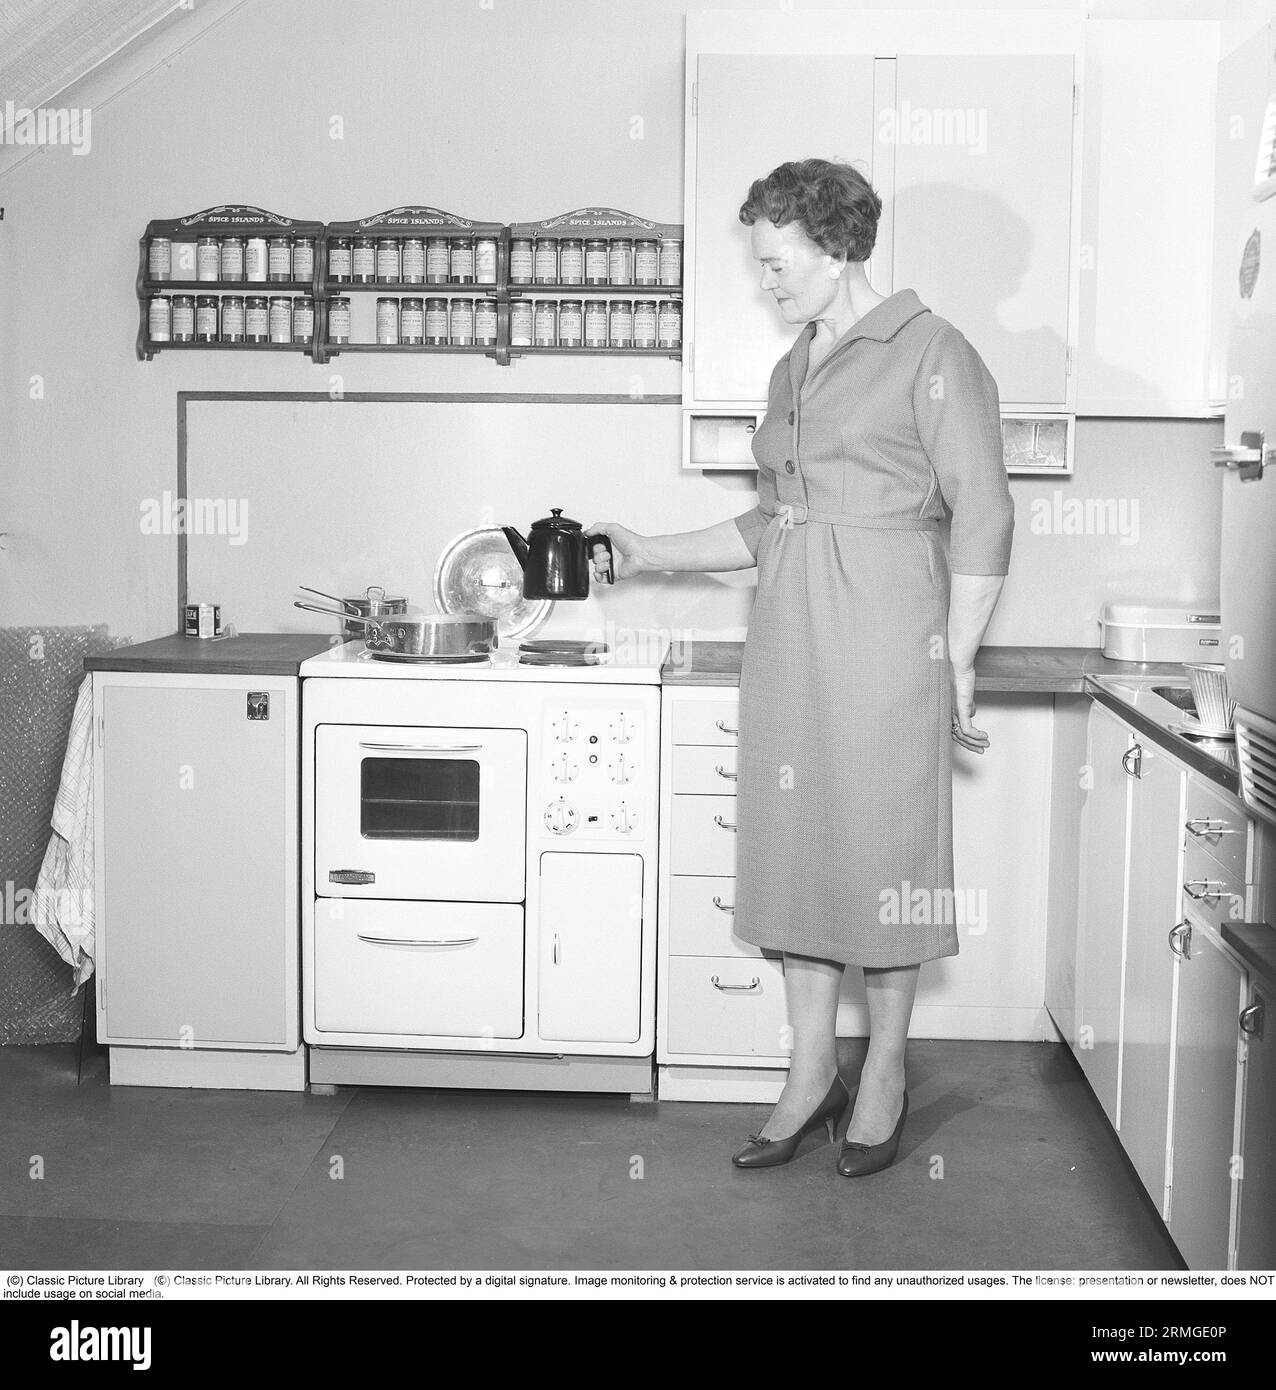 Dans les années 1950 Une femme dans une cuisine typique des années 1950 avec des armoires en bois et un ensemble d'épices sur des étagères au-dessus de la cuisinière. Elle tient une cafetière dans le look émaillé typique des années 50. Suède 1959. Kristoffersson réf CL8-9 Banque D'Images